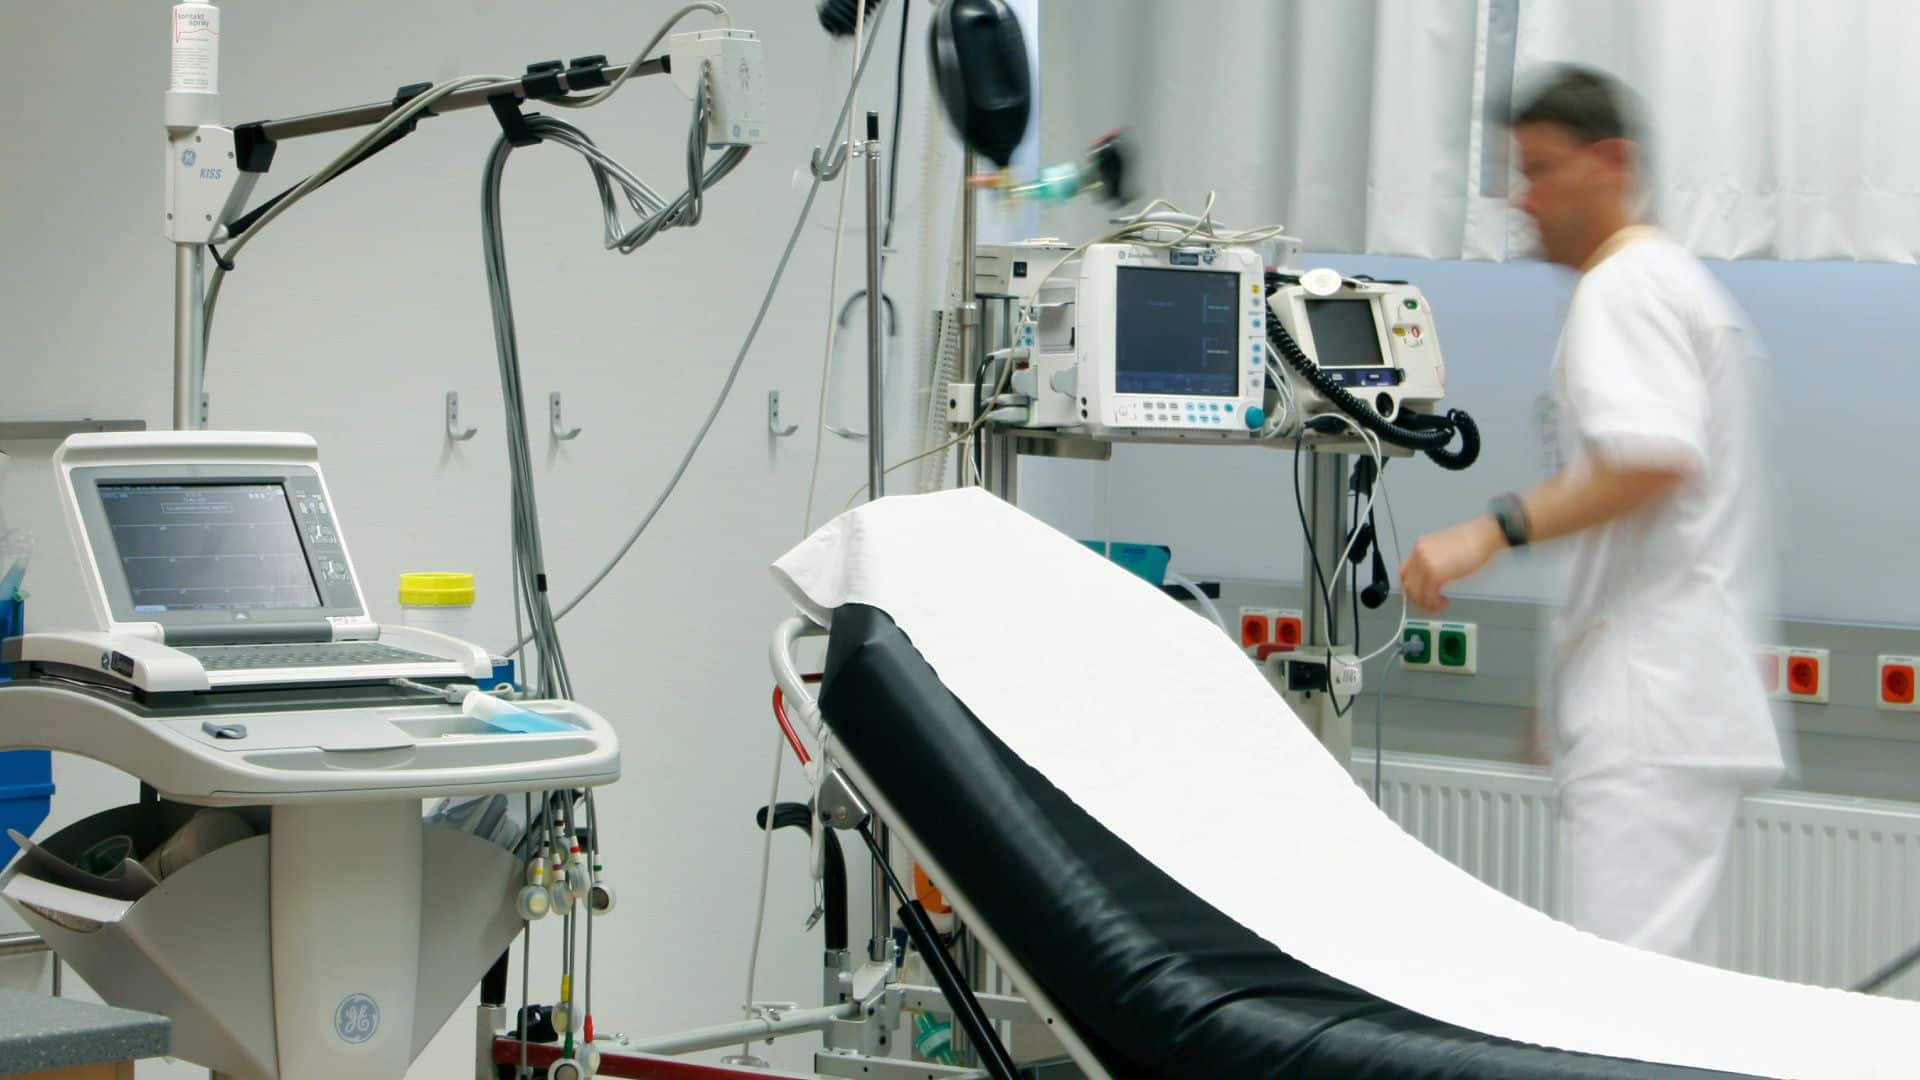 Bild einer Krankenhausliege mit Medizintechnischen Geräten nebenbei